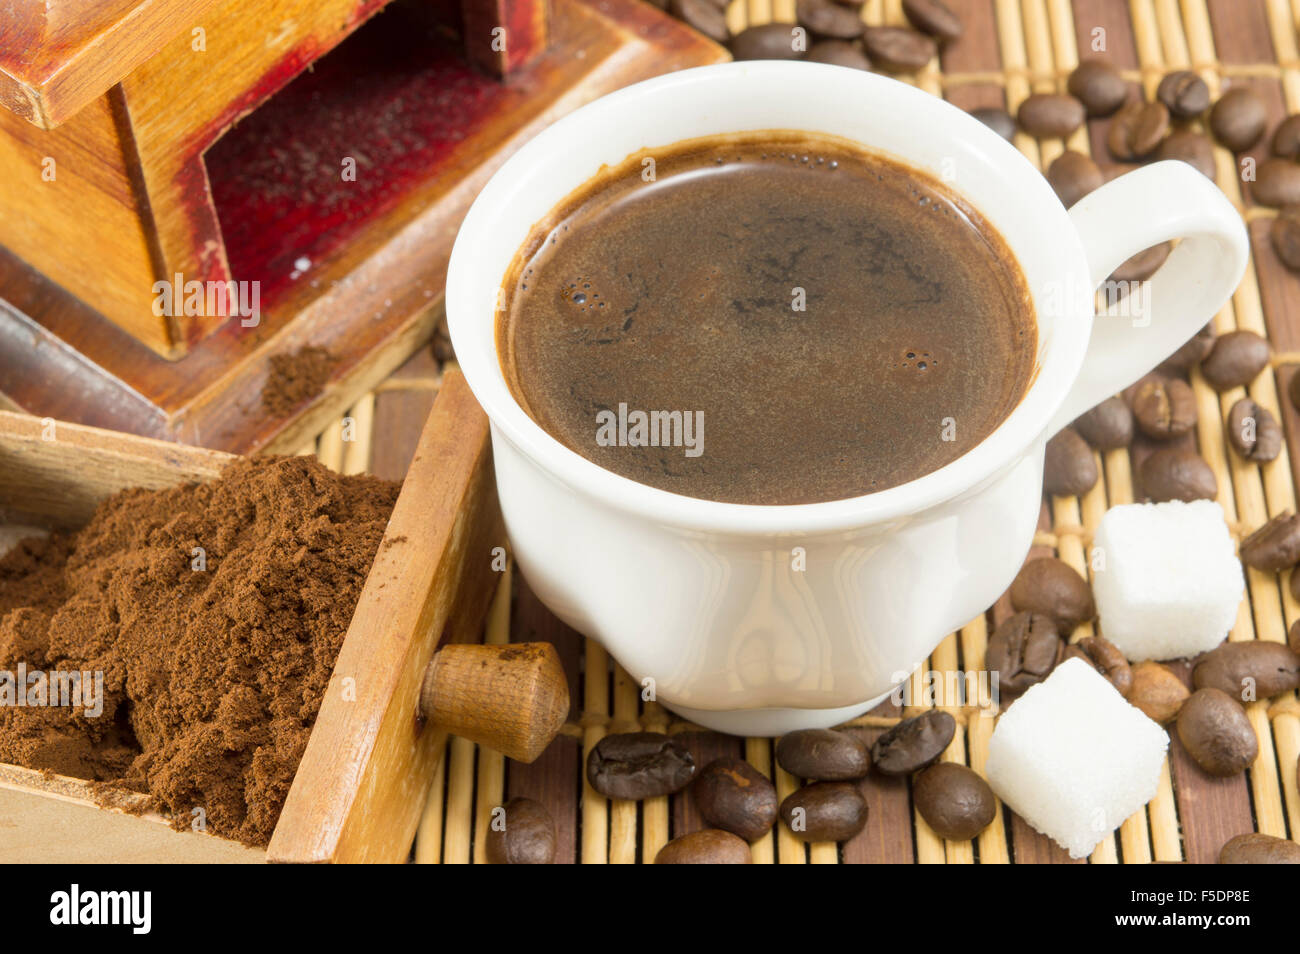 Tazza di caffè con zucchero e caffè in grani, accanto al caffè macinato in una smerigliatrice cassetto Foto Stock